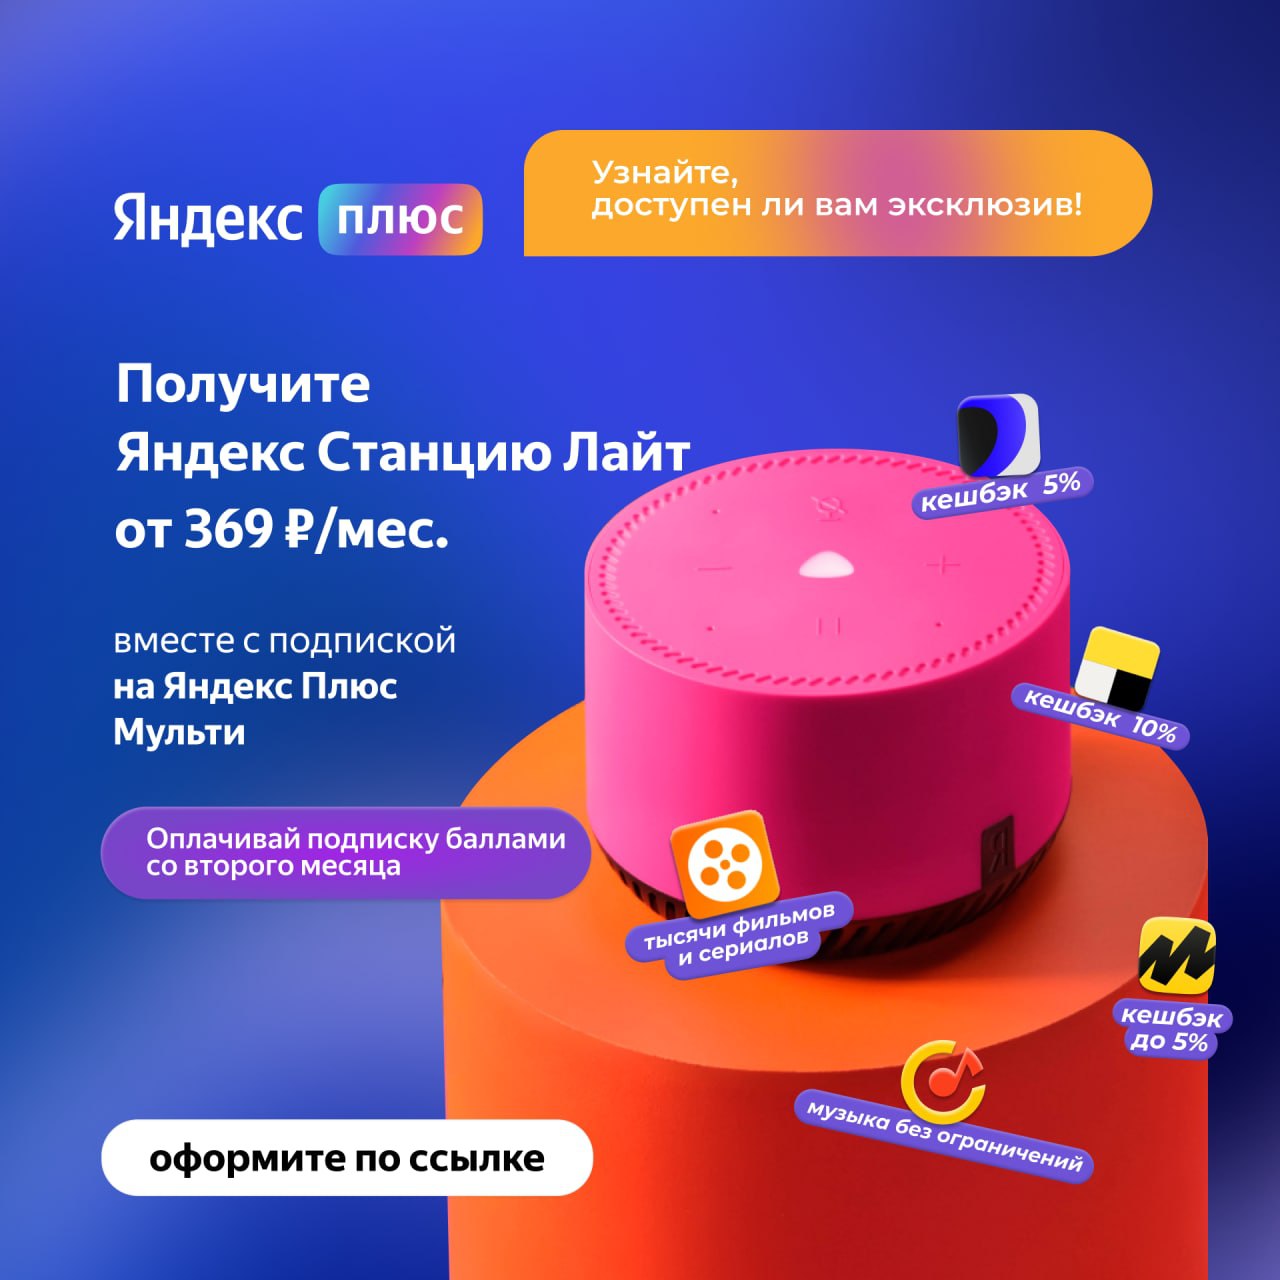 Яндекс подписка купить телеграмм фото 10